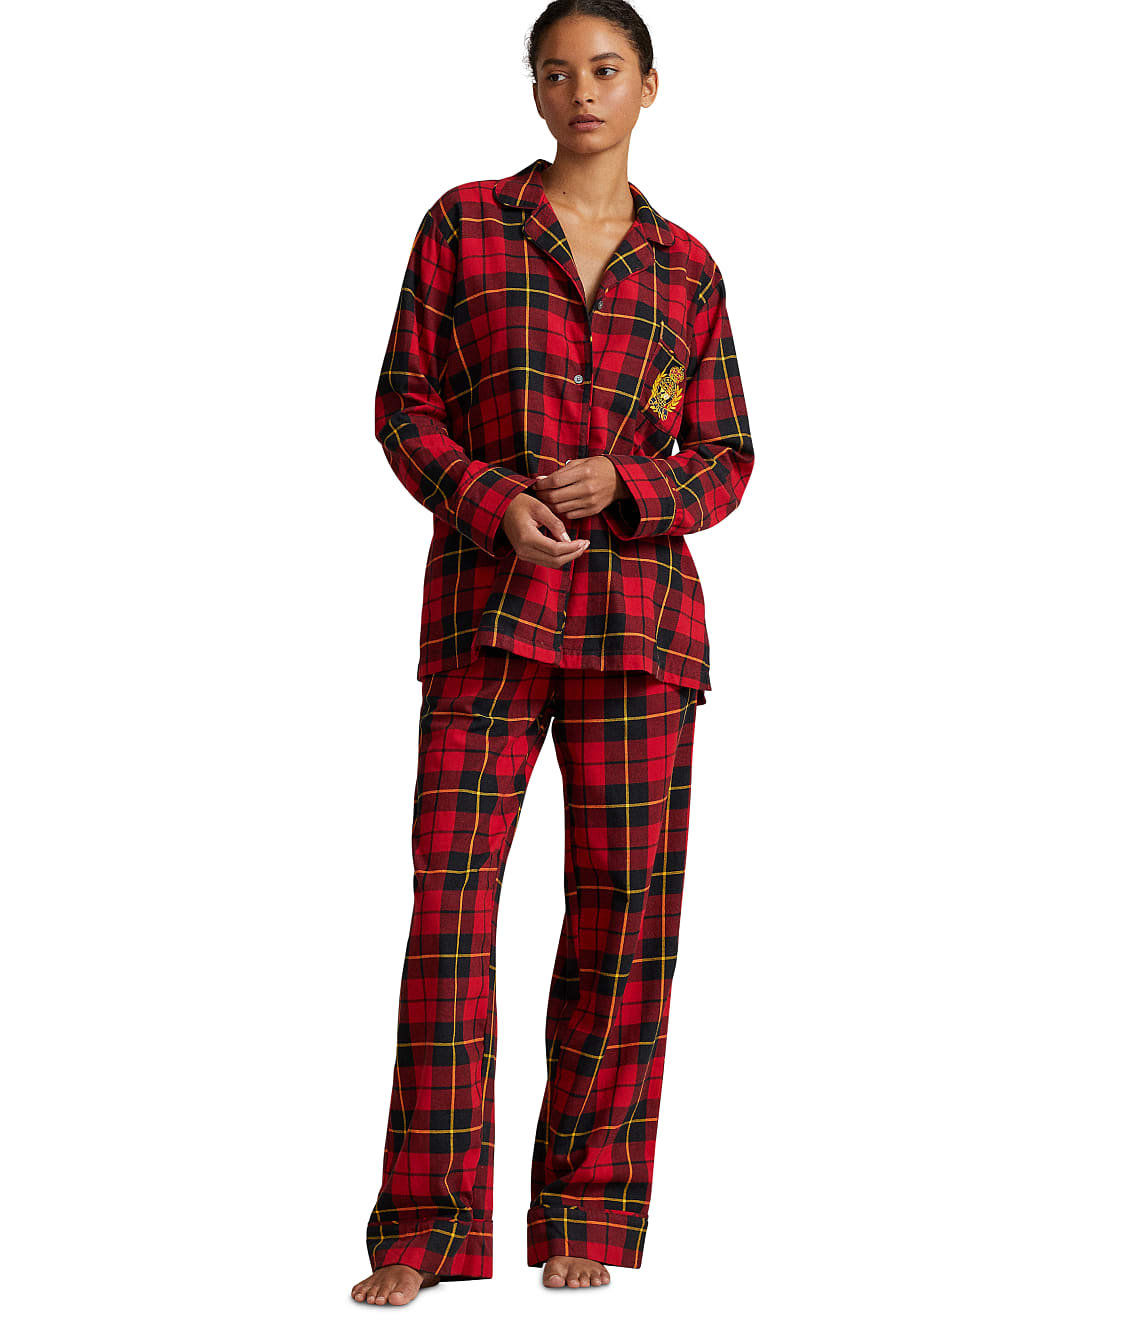 The Madison Brushed Cotton Pajama Set